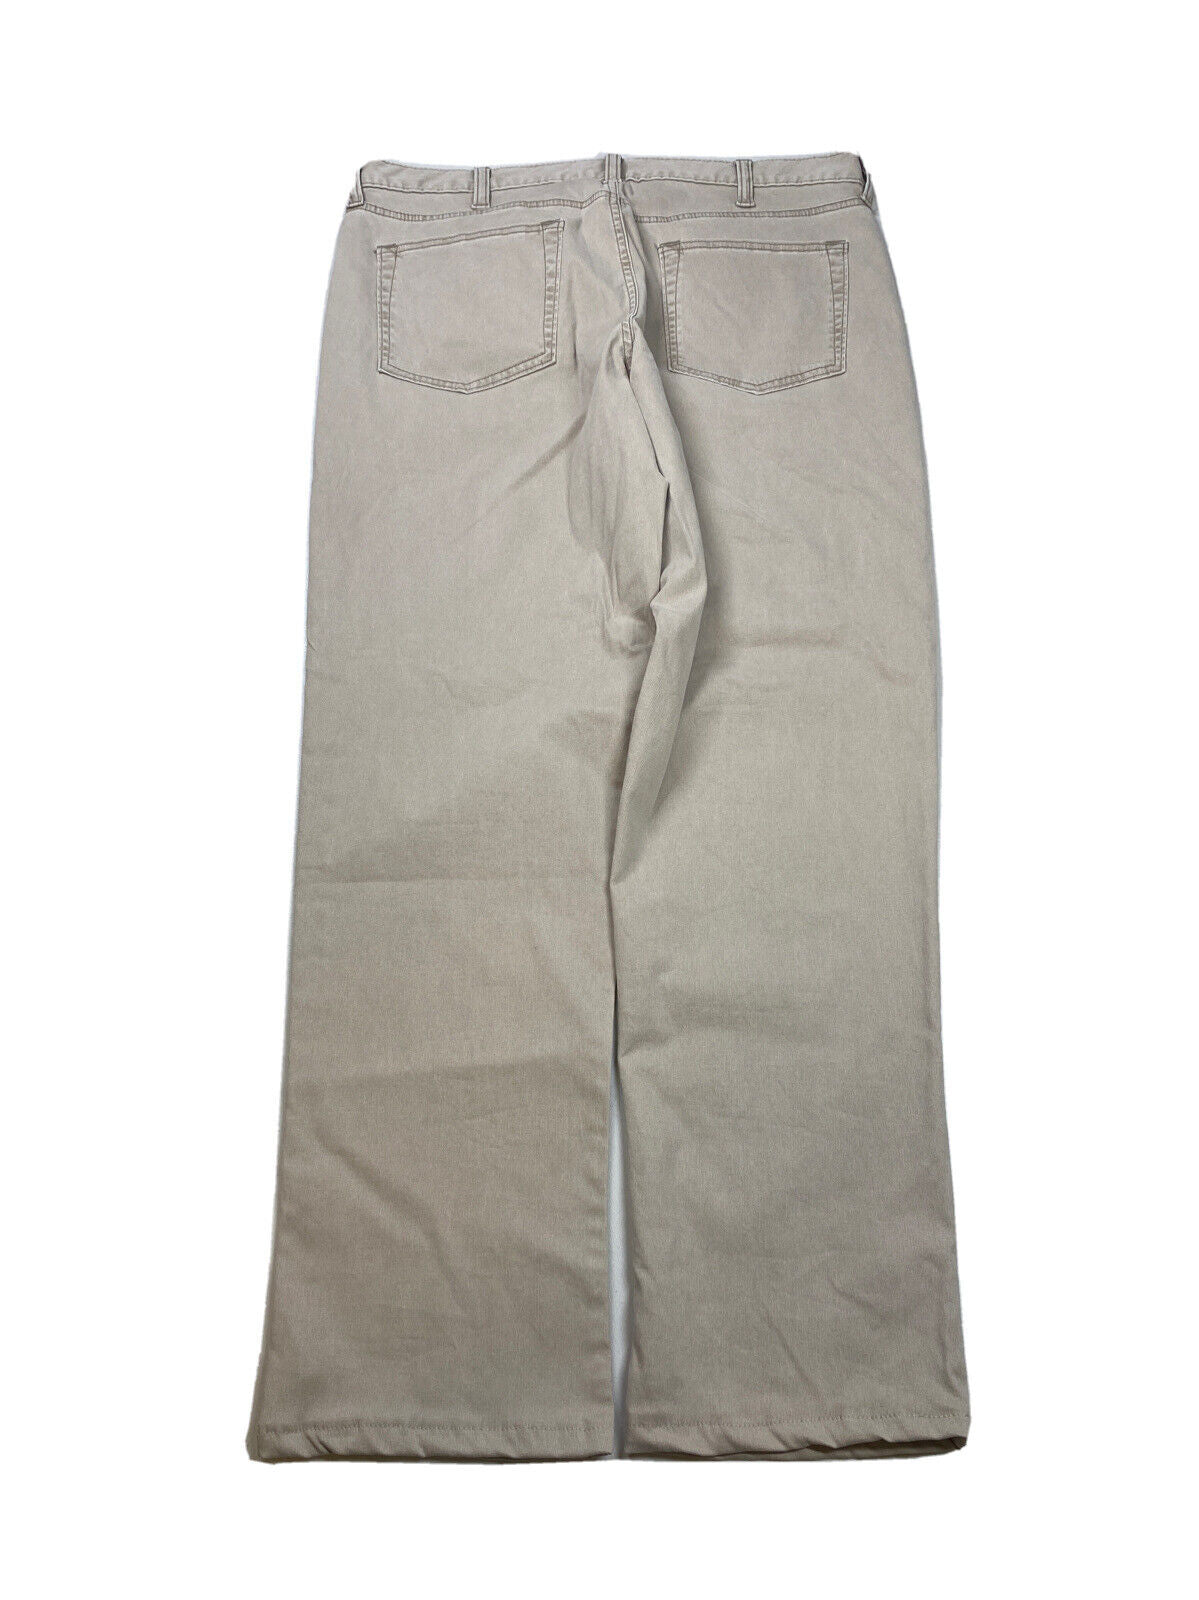 NEW Lands' End Men's Beige Square Rigger Traditional Fit Denim Jeans - 36